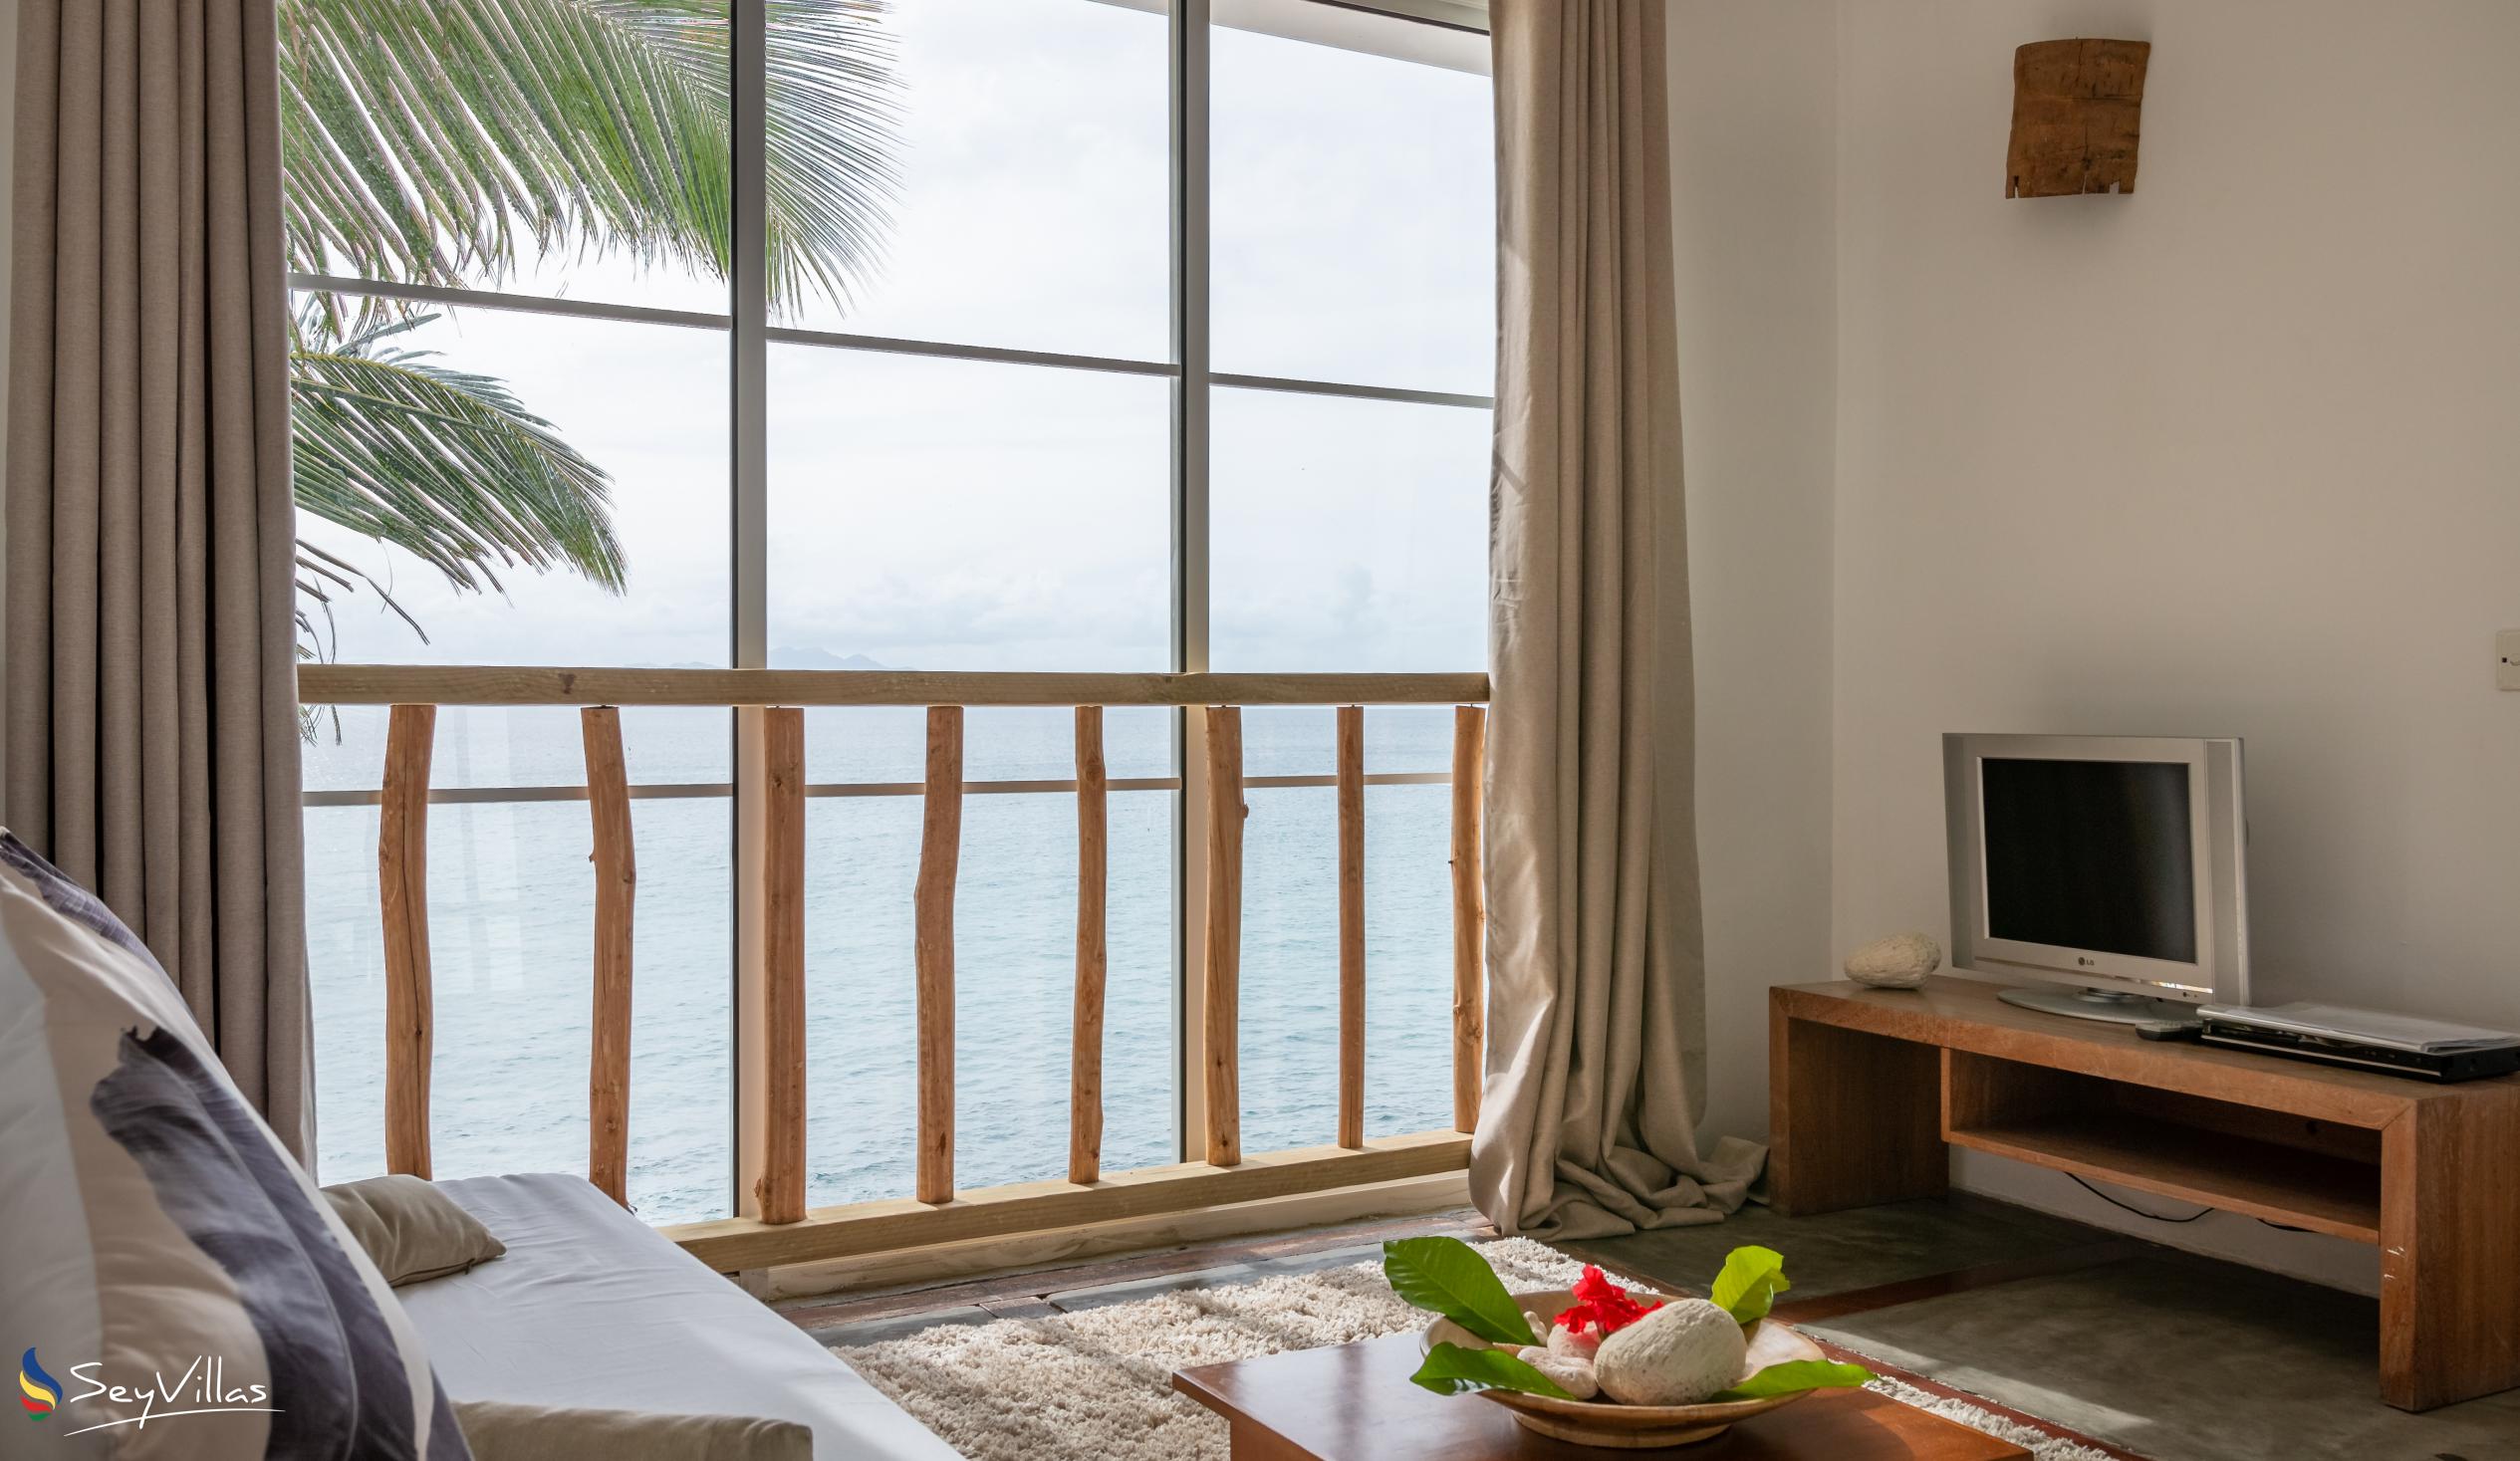 Foto 214: Bliss Hotel - SEASIDE - Appartement vue sur la mer - Mahé (Seychelles)